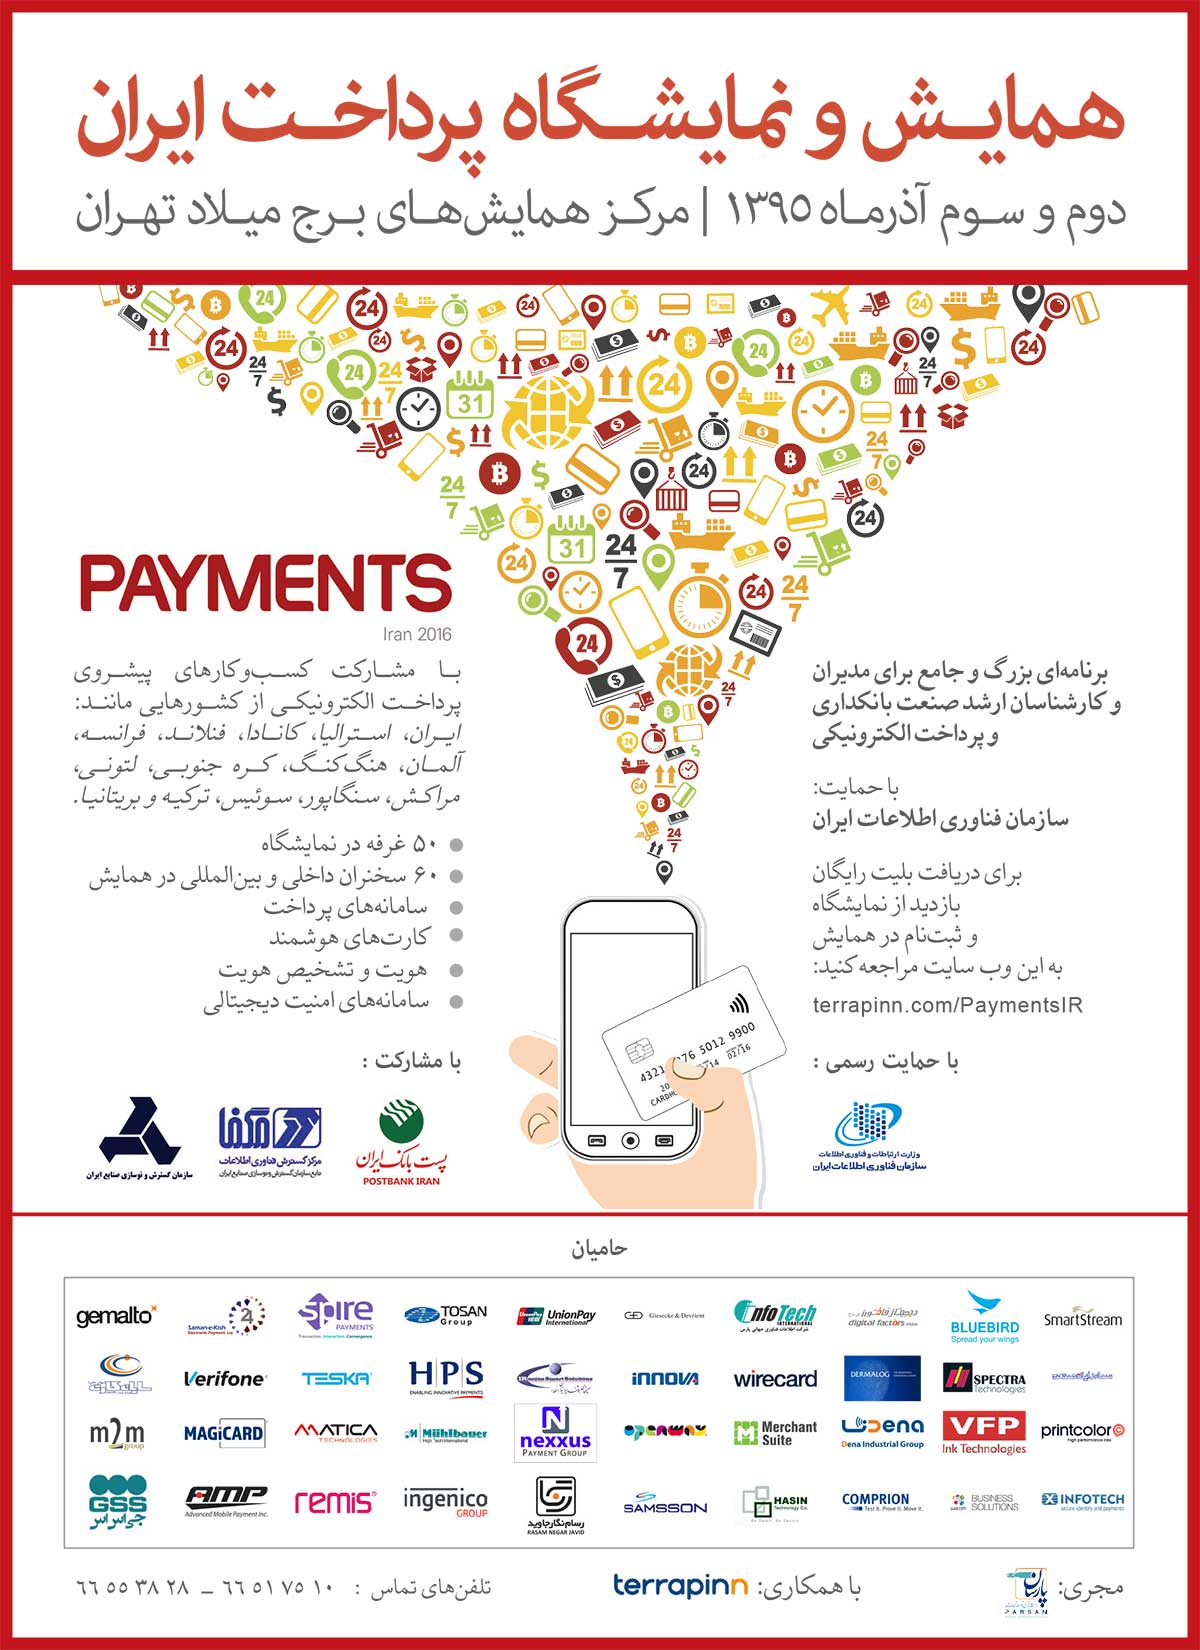 4 سازمان بزرگ حمایت خود از همایش و نمایشگاه پرداخت ایران را اعلام کردند